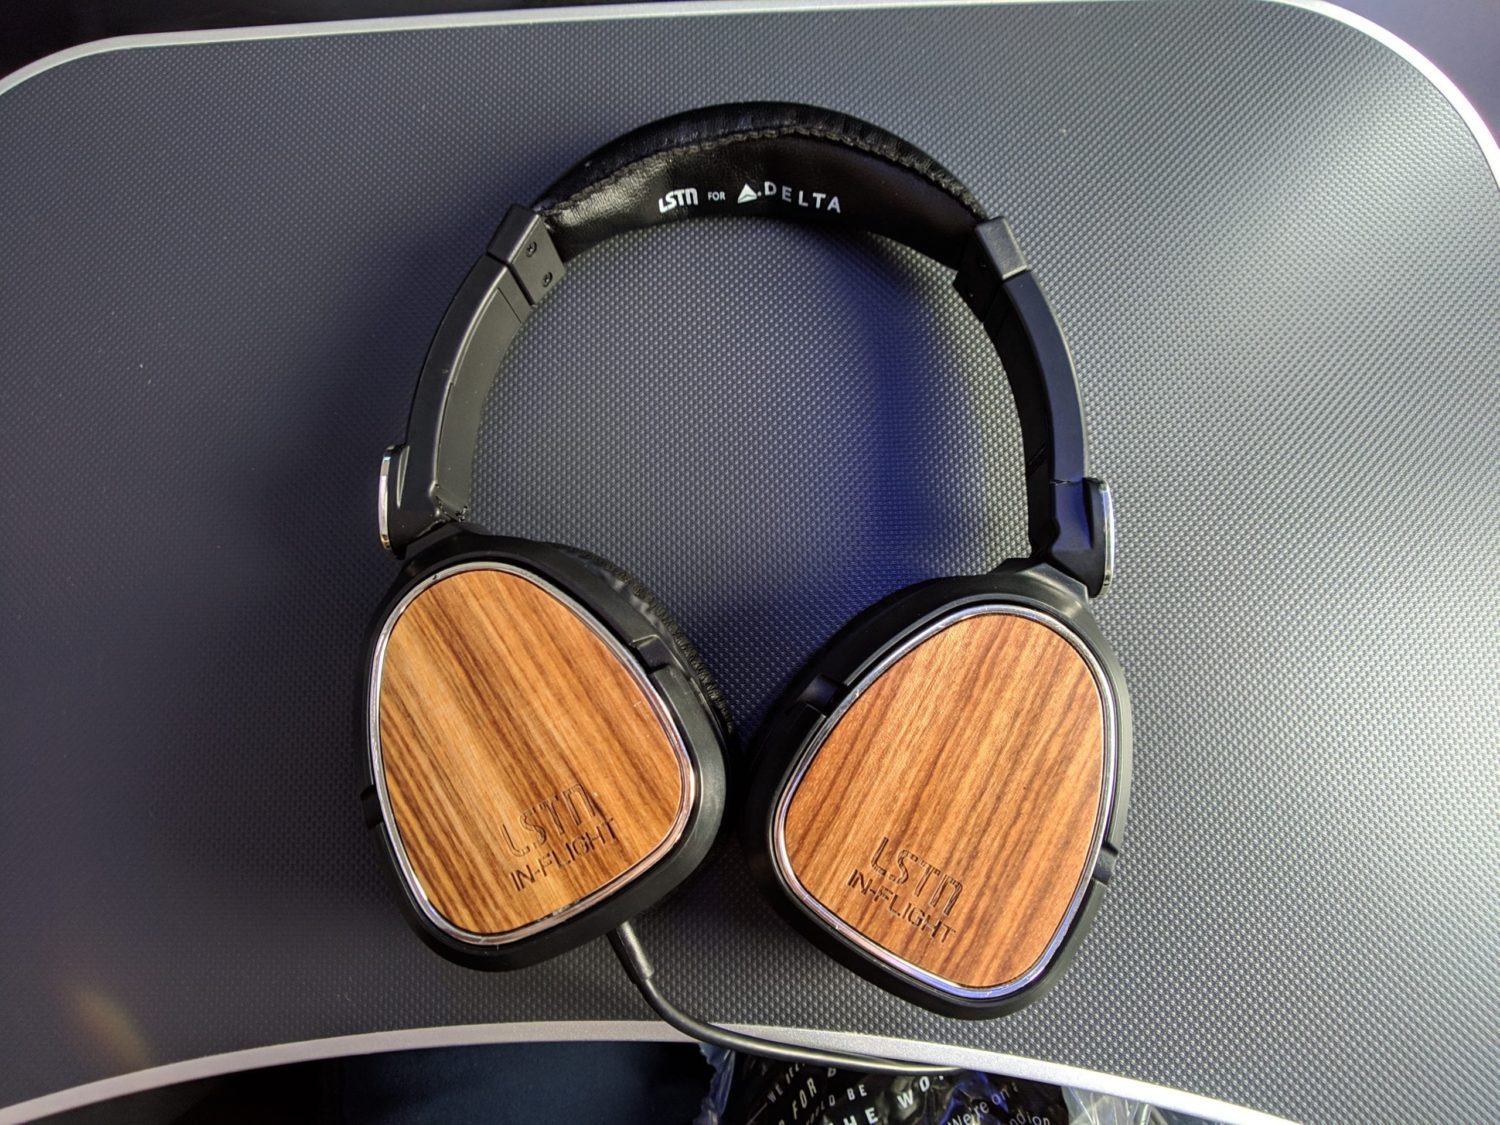 Delta One Suites headphones